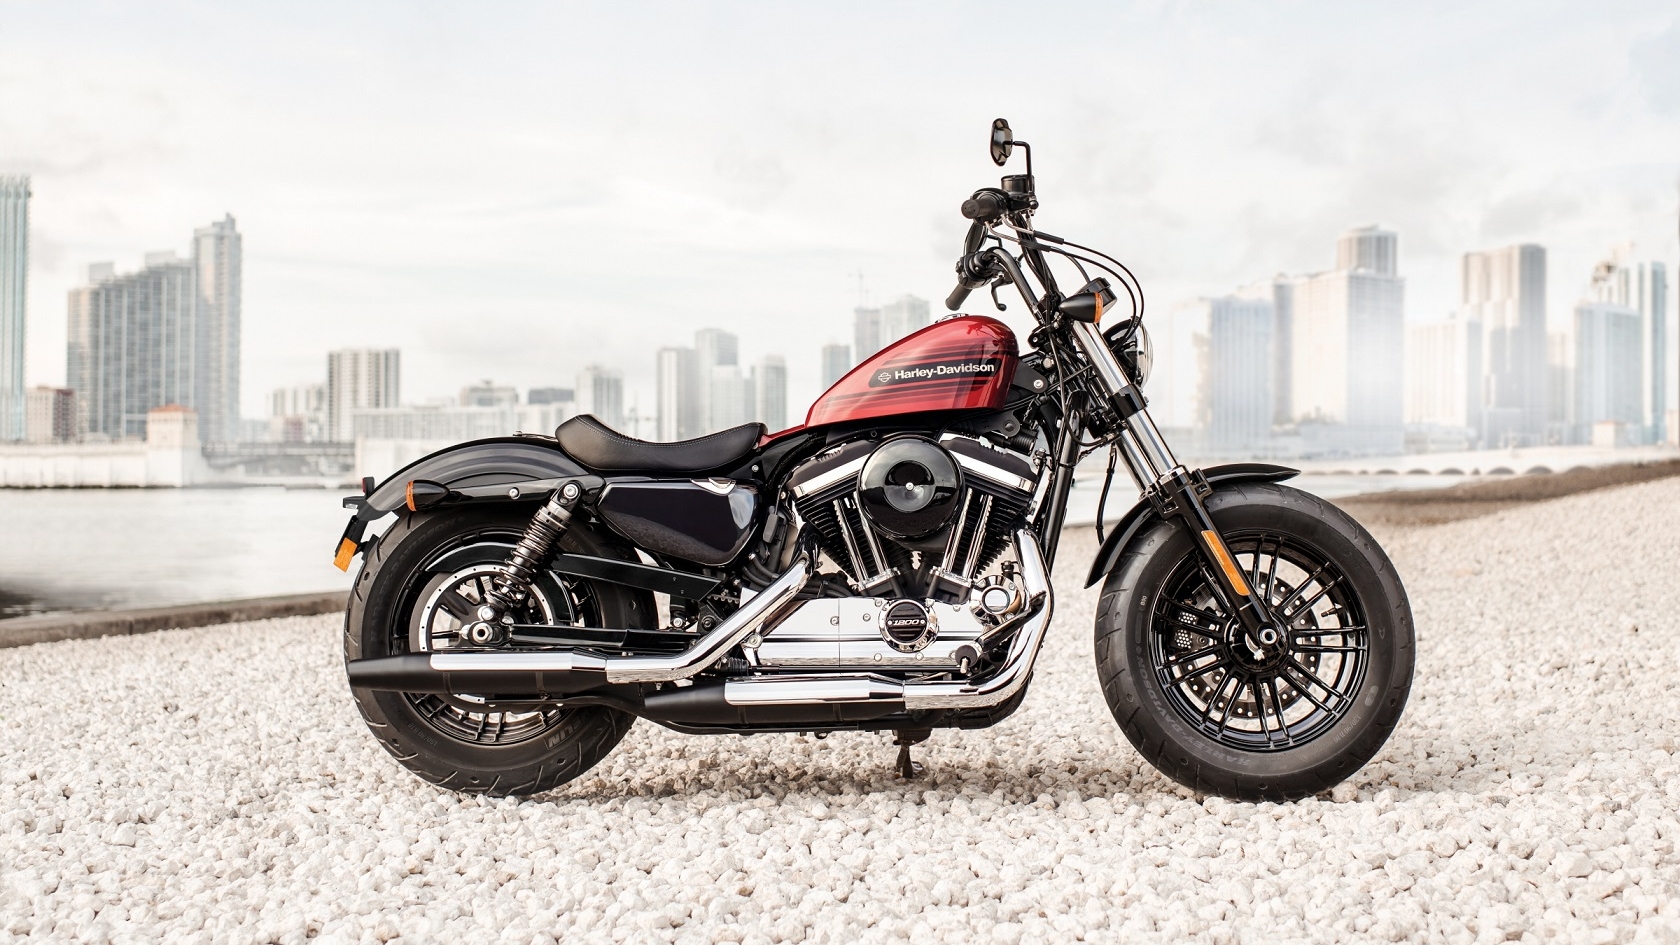 Le modèle Iron 1200 de Harley-Davidson
